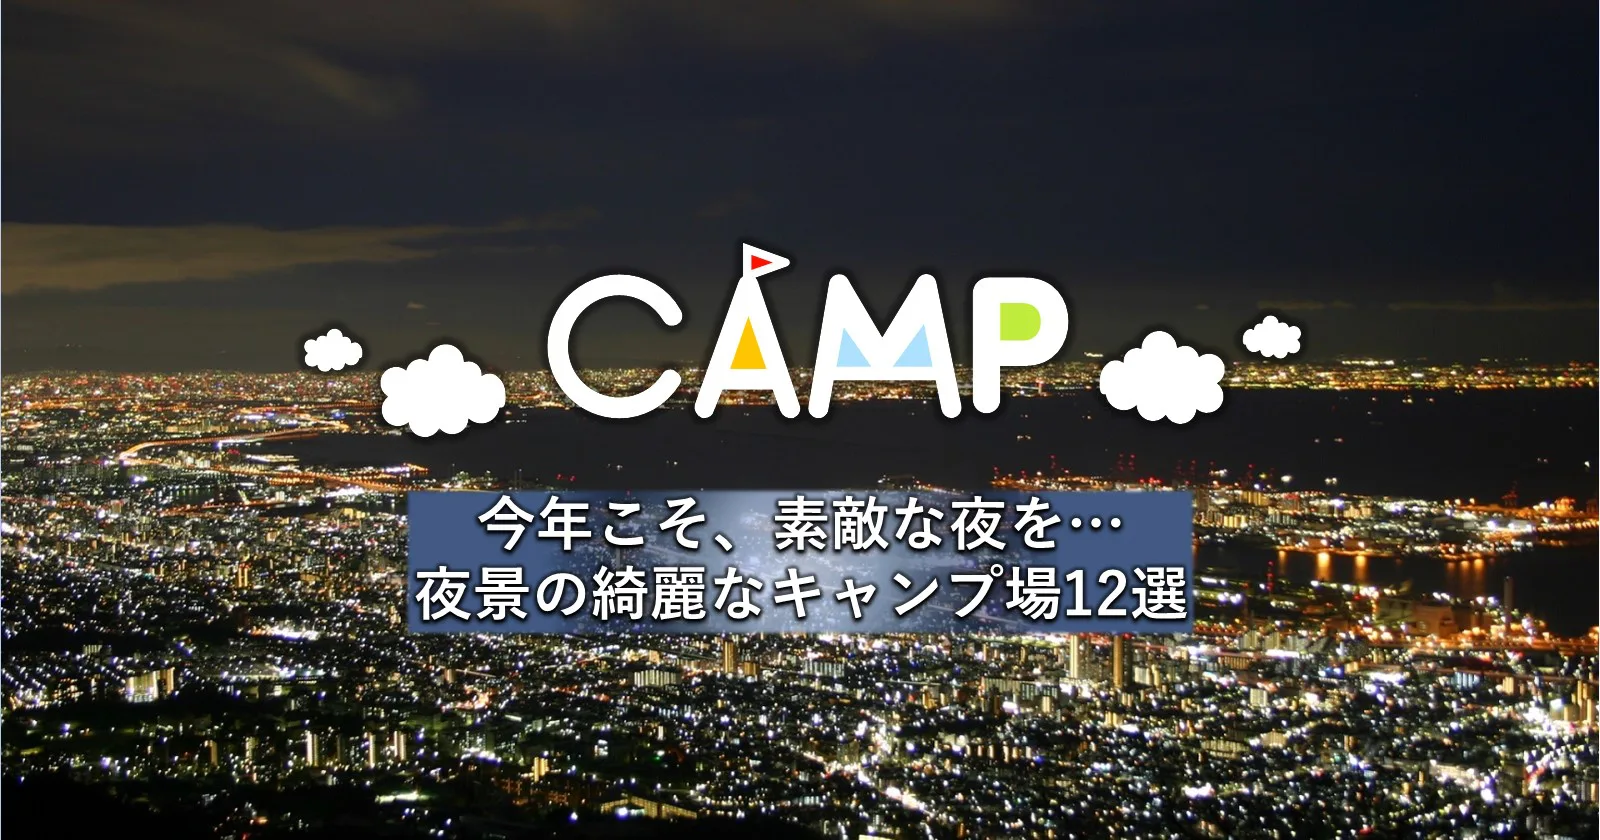 今年こそ 素敵な夜を 夜景の綺麗なキャンプ場12選 キャンプ アウトドアのtakibi タキビ